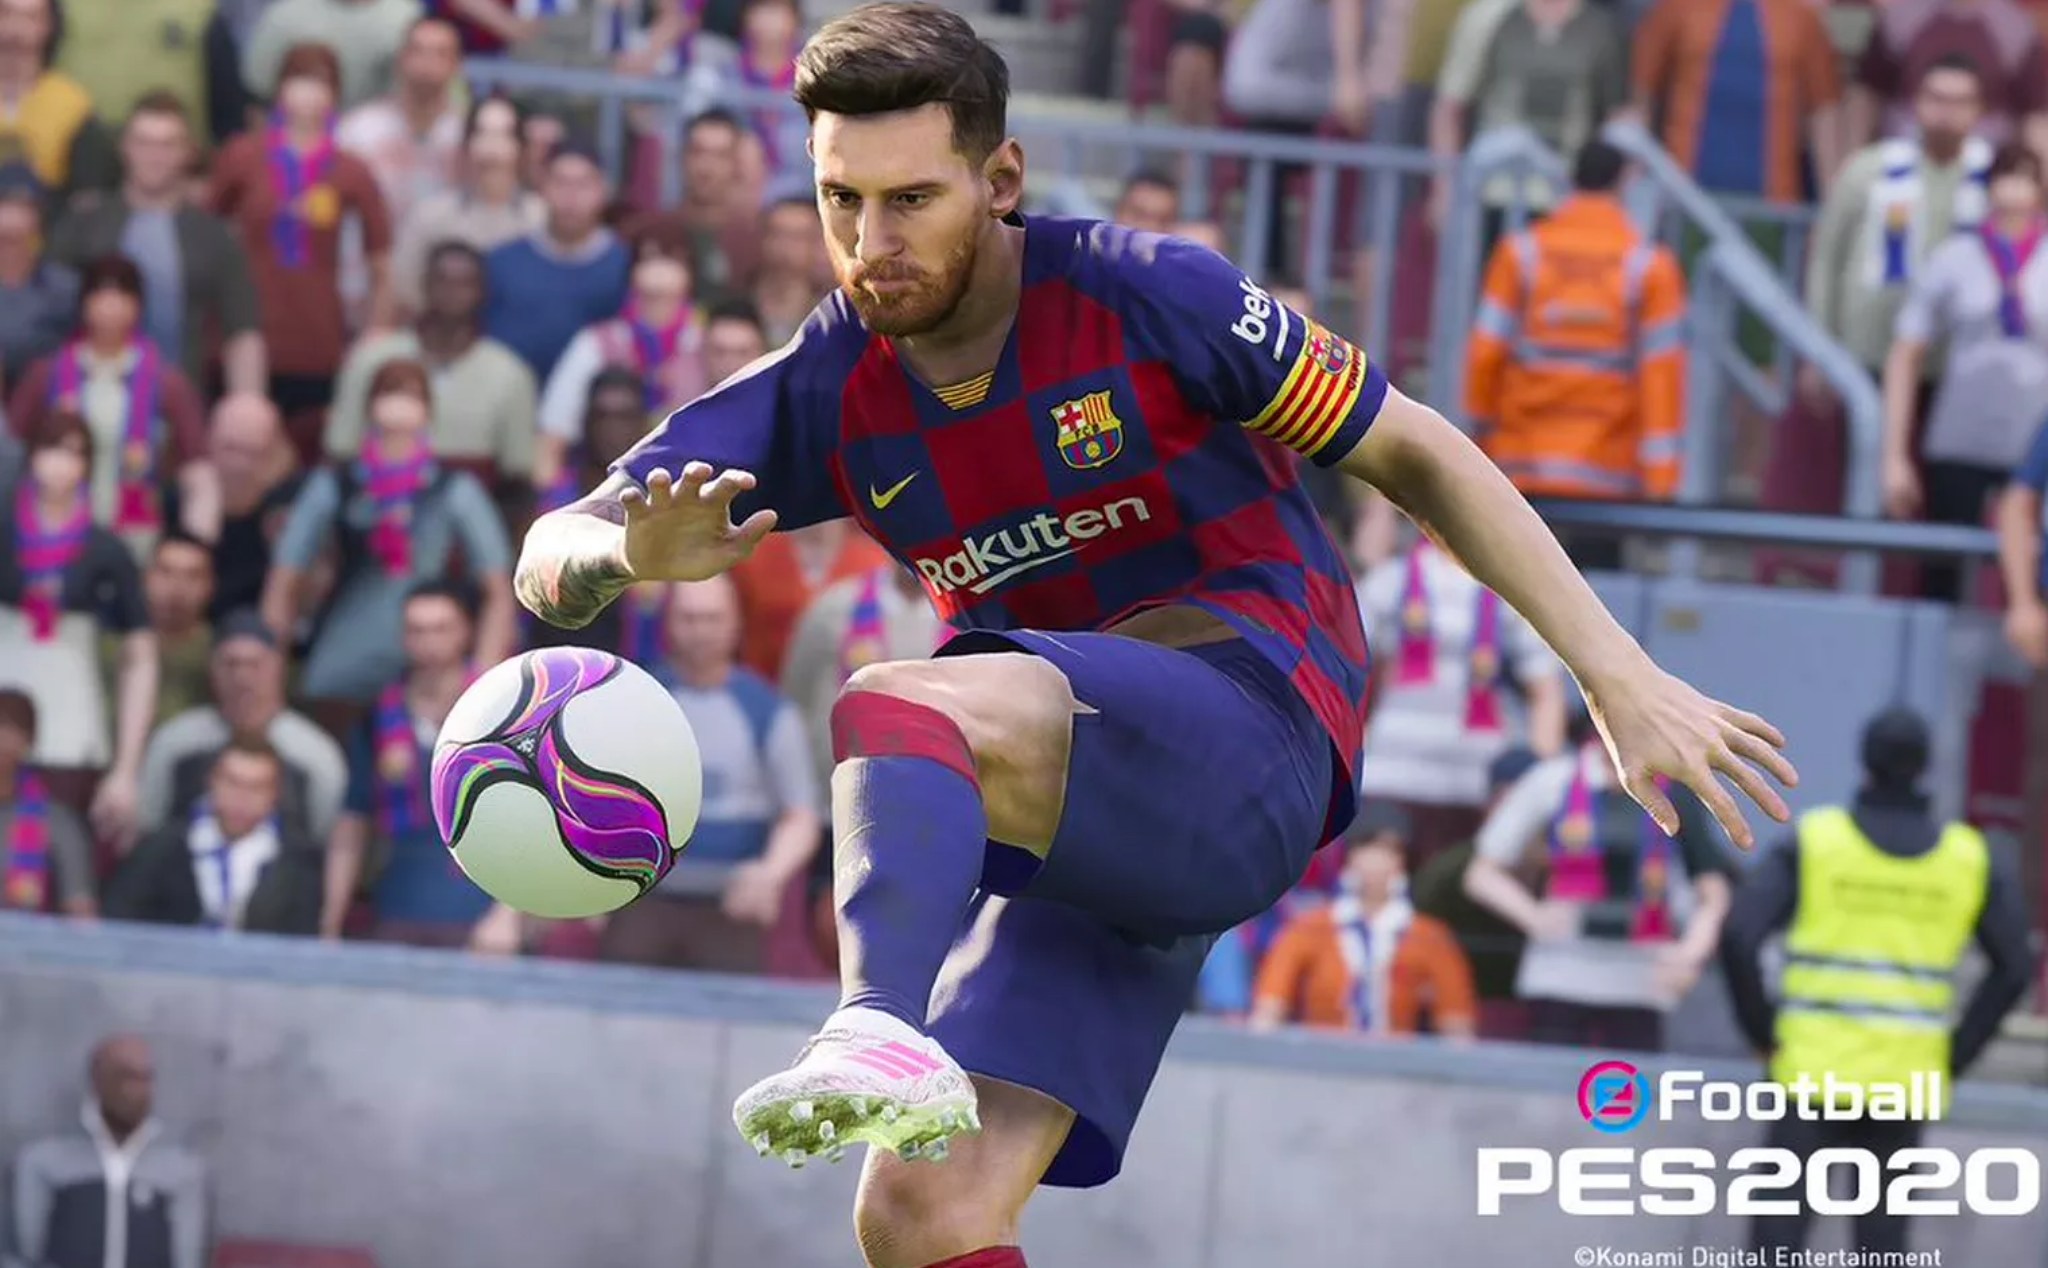 Phiên bản tiếp theo của Pro Evolution Soccer sẽ có tên eFootball PES 2020, ra mắt vào tháng 9 này